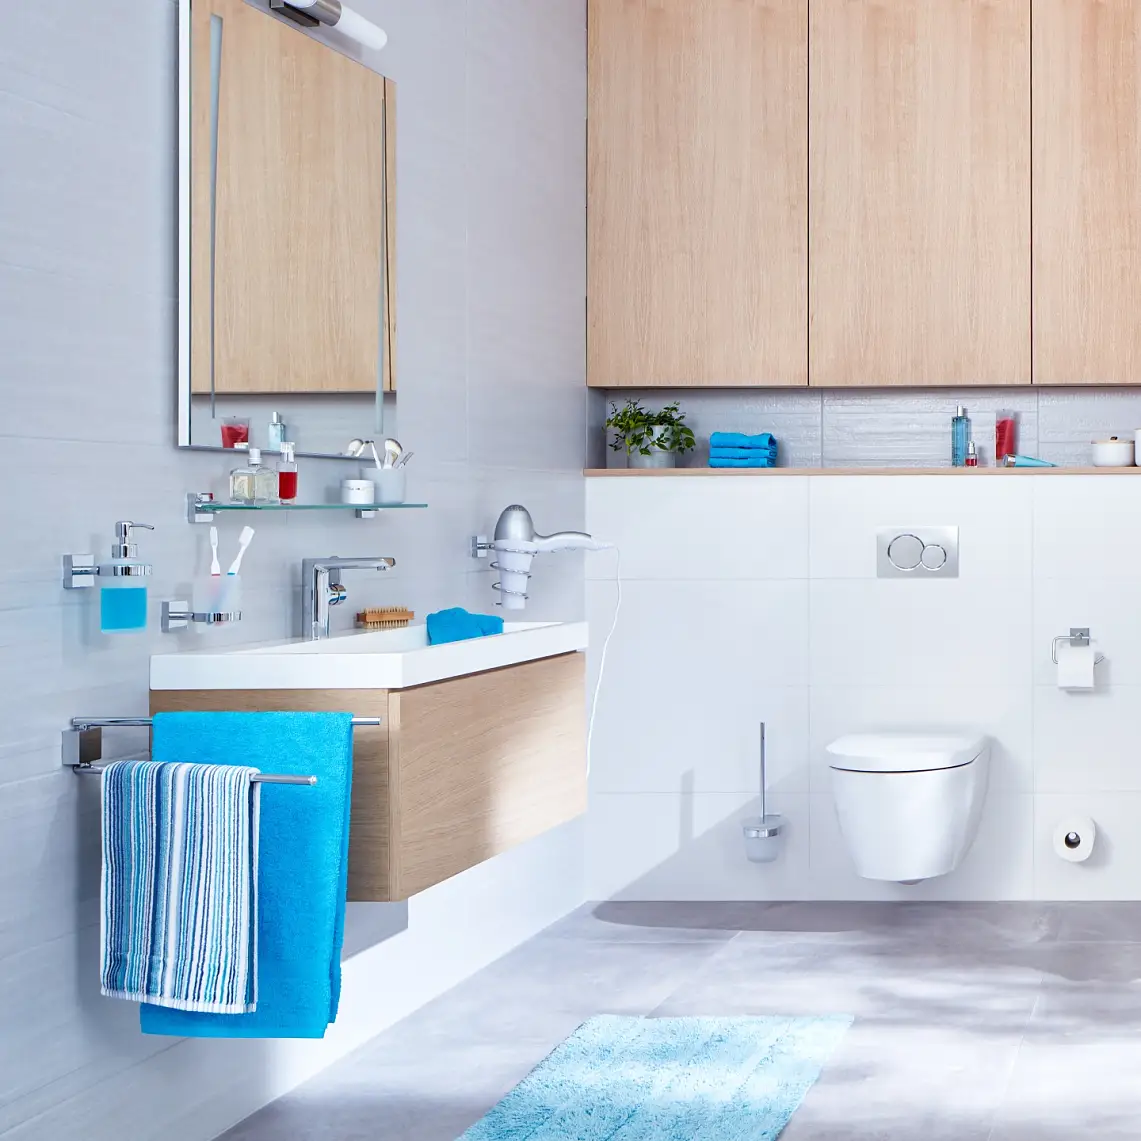 Un design épuré et des angles raffinés pour transformer votre salle de bains.